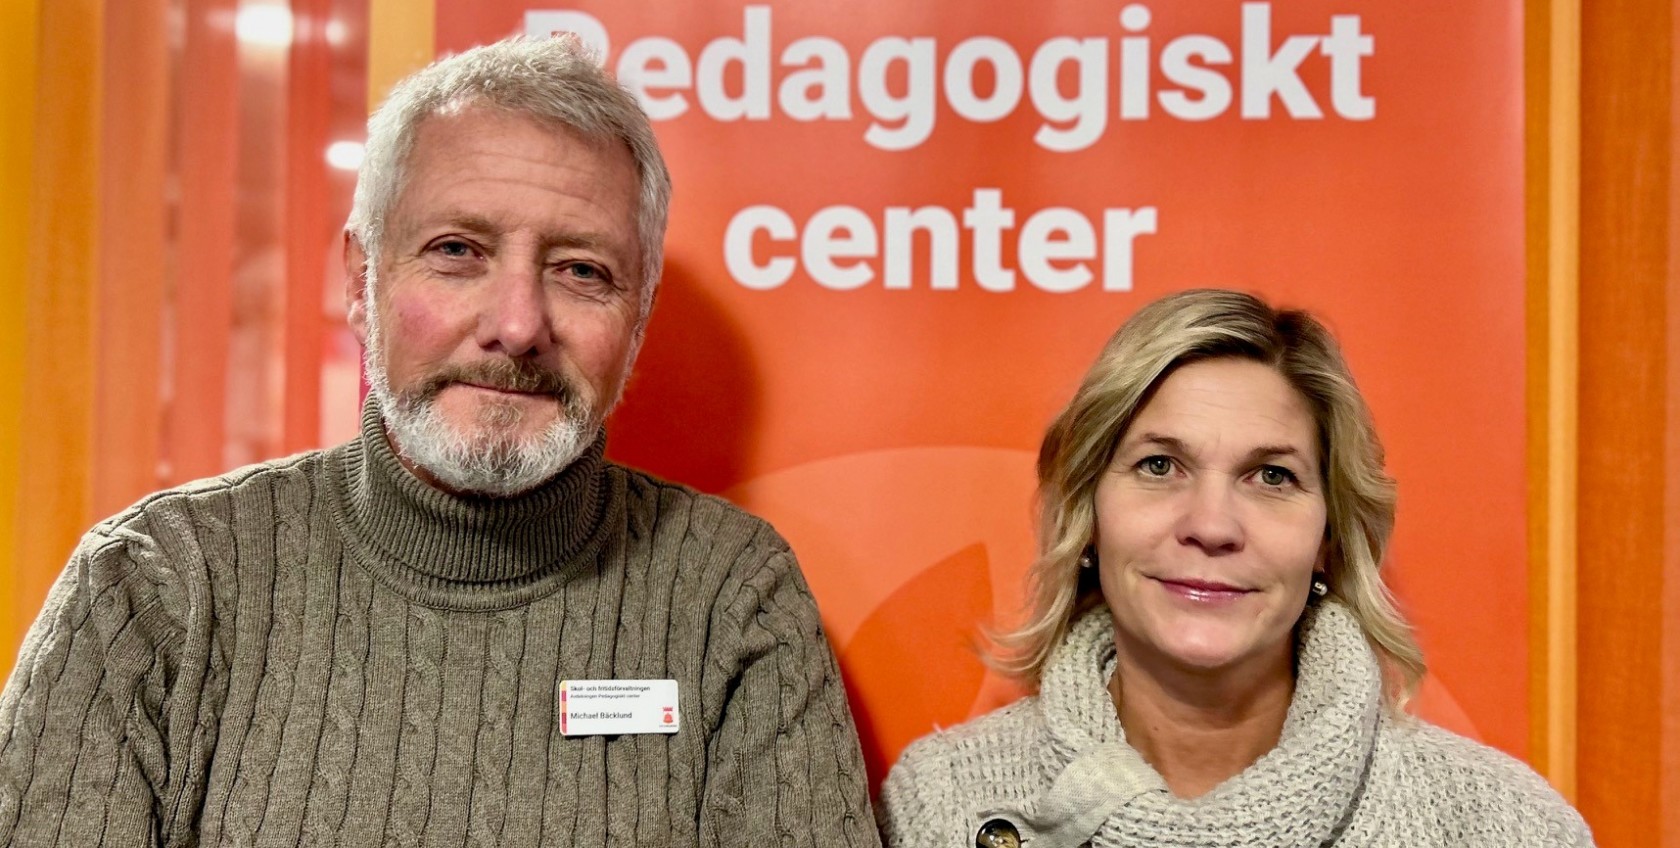 Michael Bäcklund och Ulrika Borkmar, Pedagogiskt center i Helsingborg